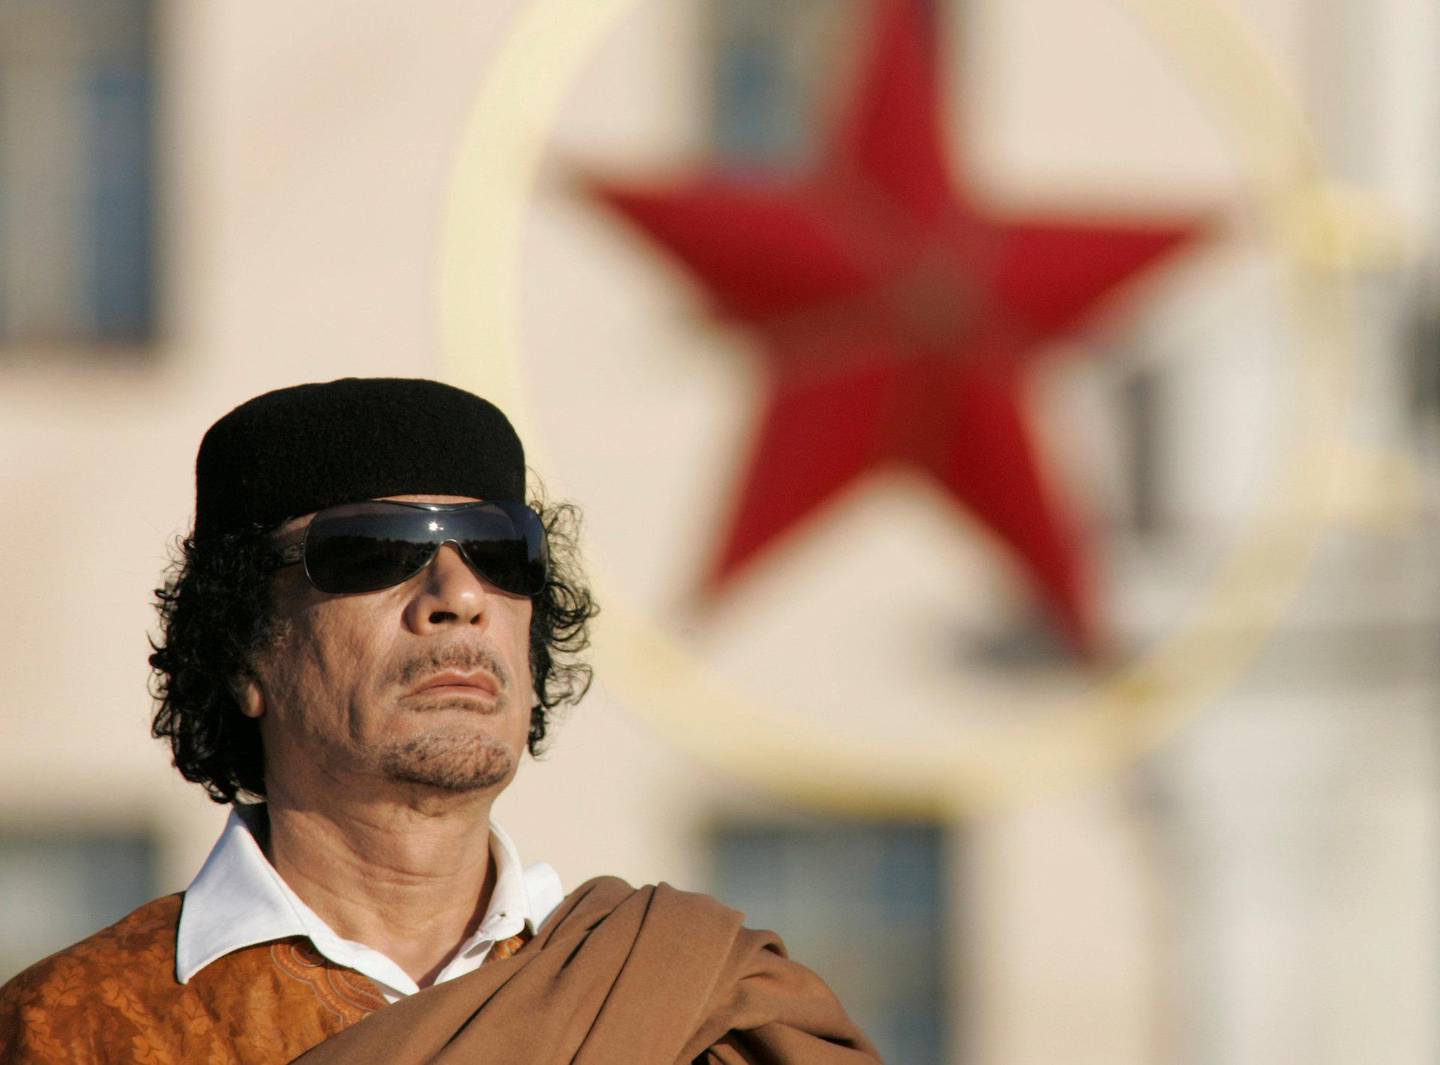 BLE DREPT: Muammar Gaddafi ble avsatt og senere drept etter opprøret i Libya i 2011, som ble hjulpet av NATO-bombing. Her er han i 2008 FOTO: NTB SCANPIX